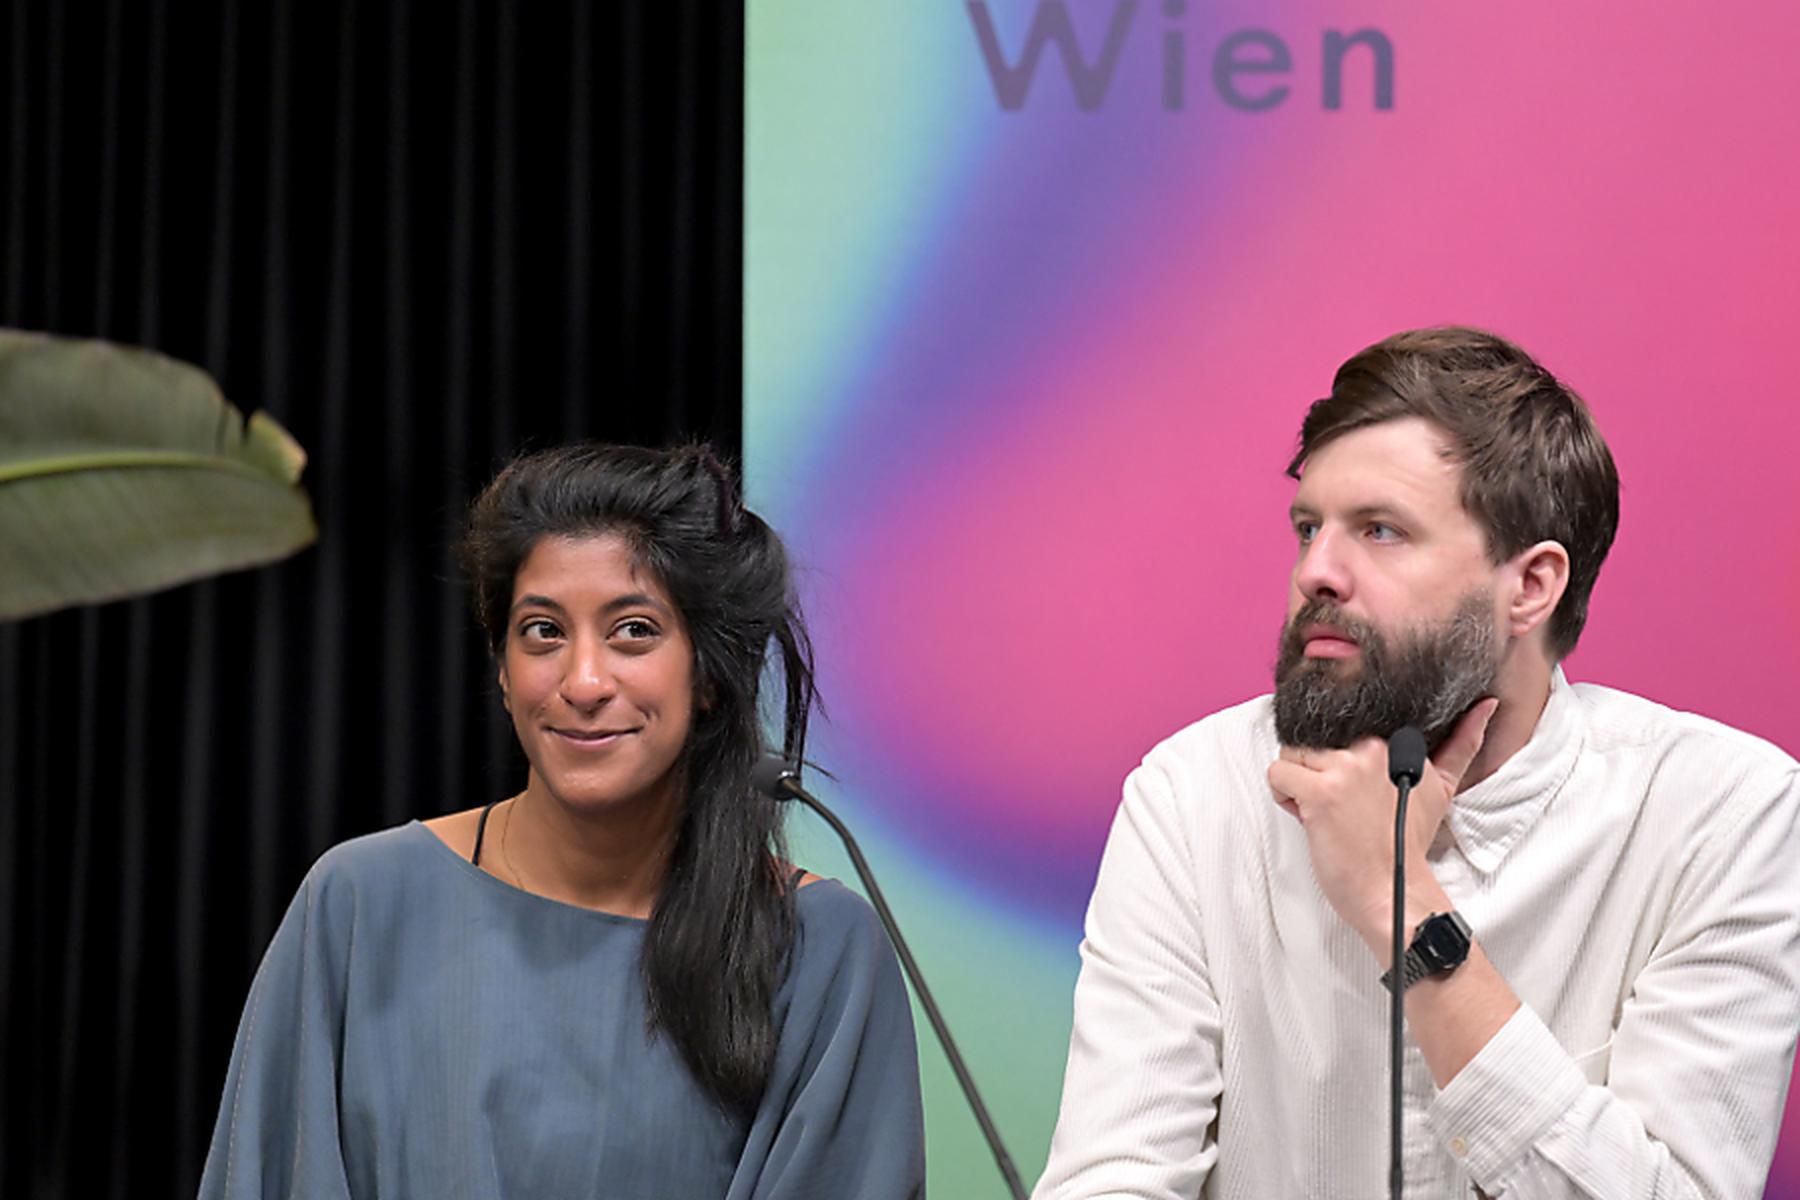 Wien | Klima Biennale setzt auf gemeinsame Gestaltung der Zukunft